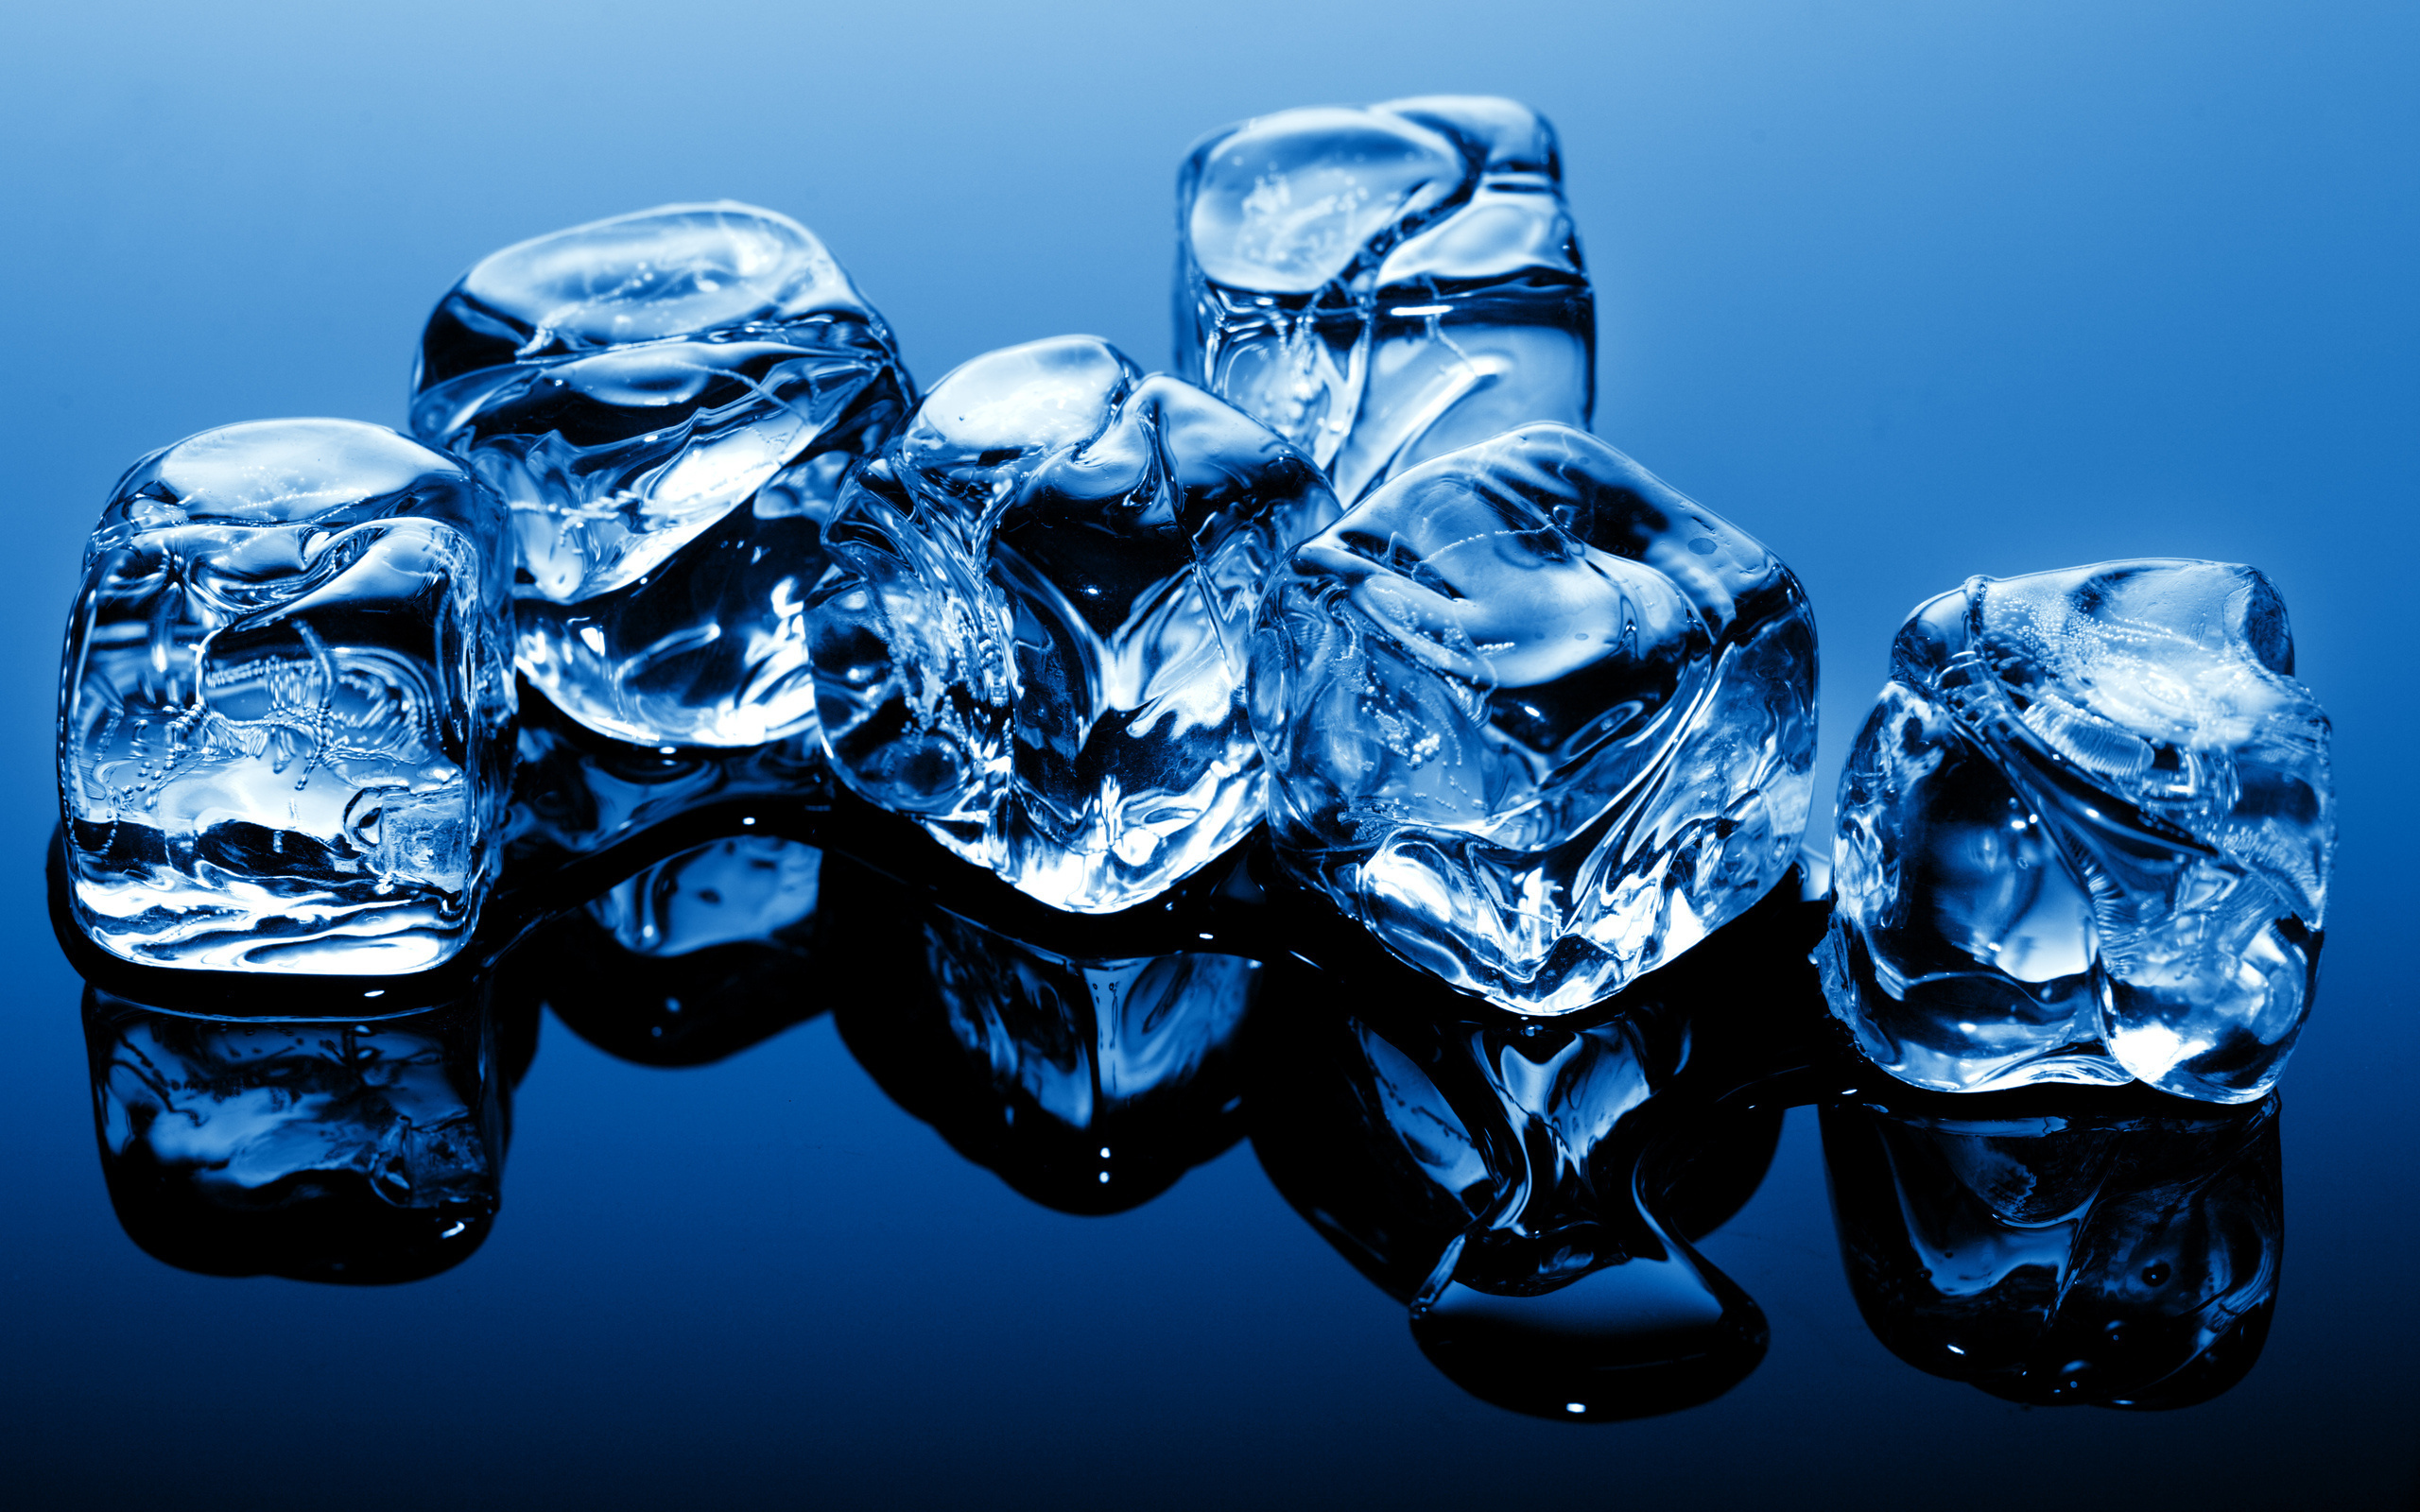 кубики льда, синий фон, креатив, обои, ice cubes, blue background, creative, wallpapers